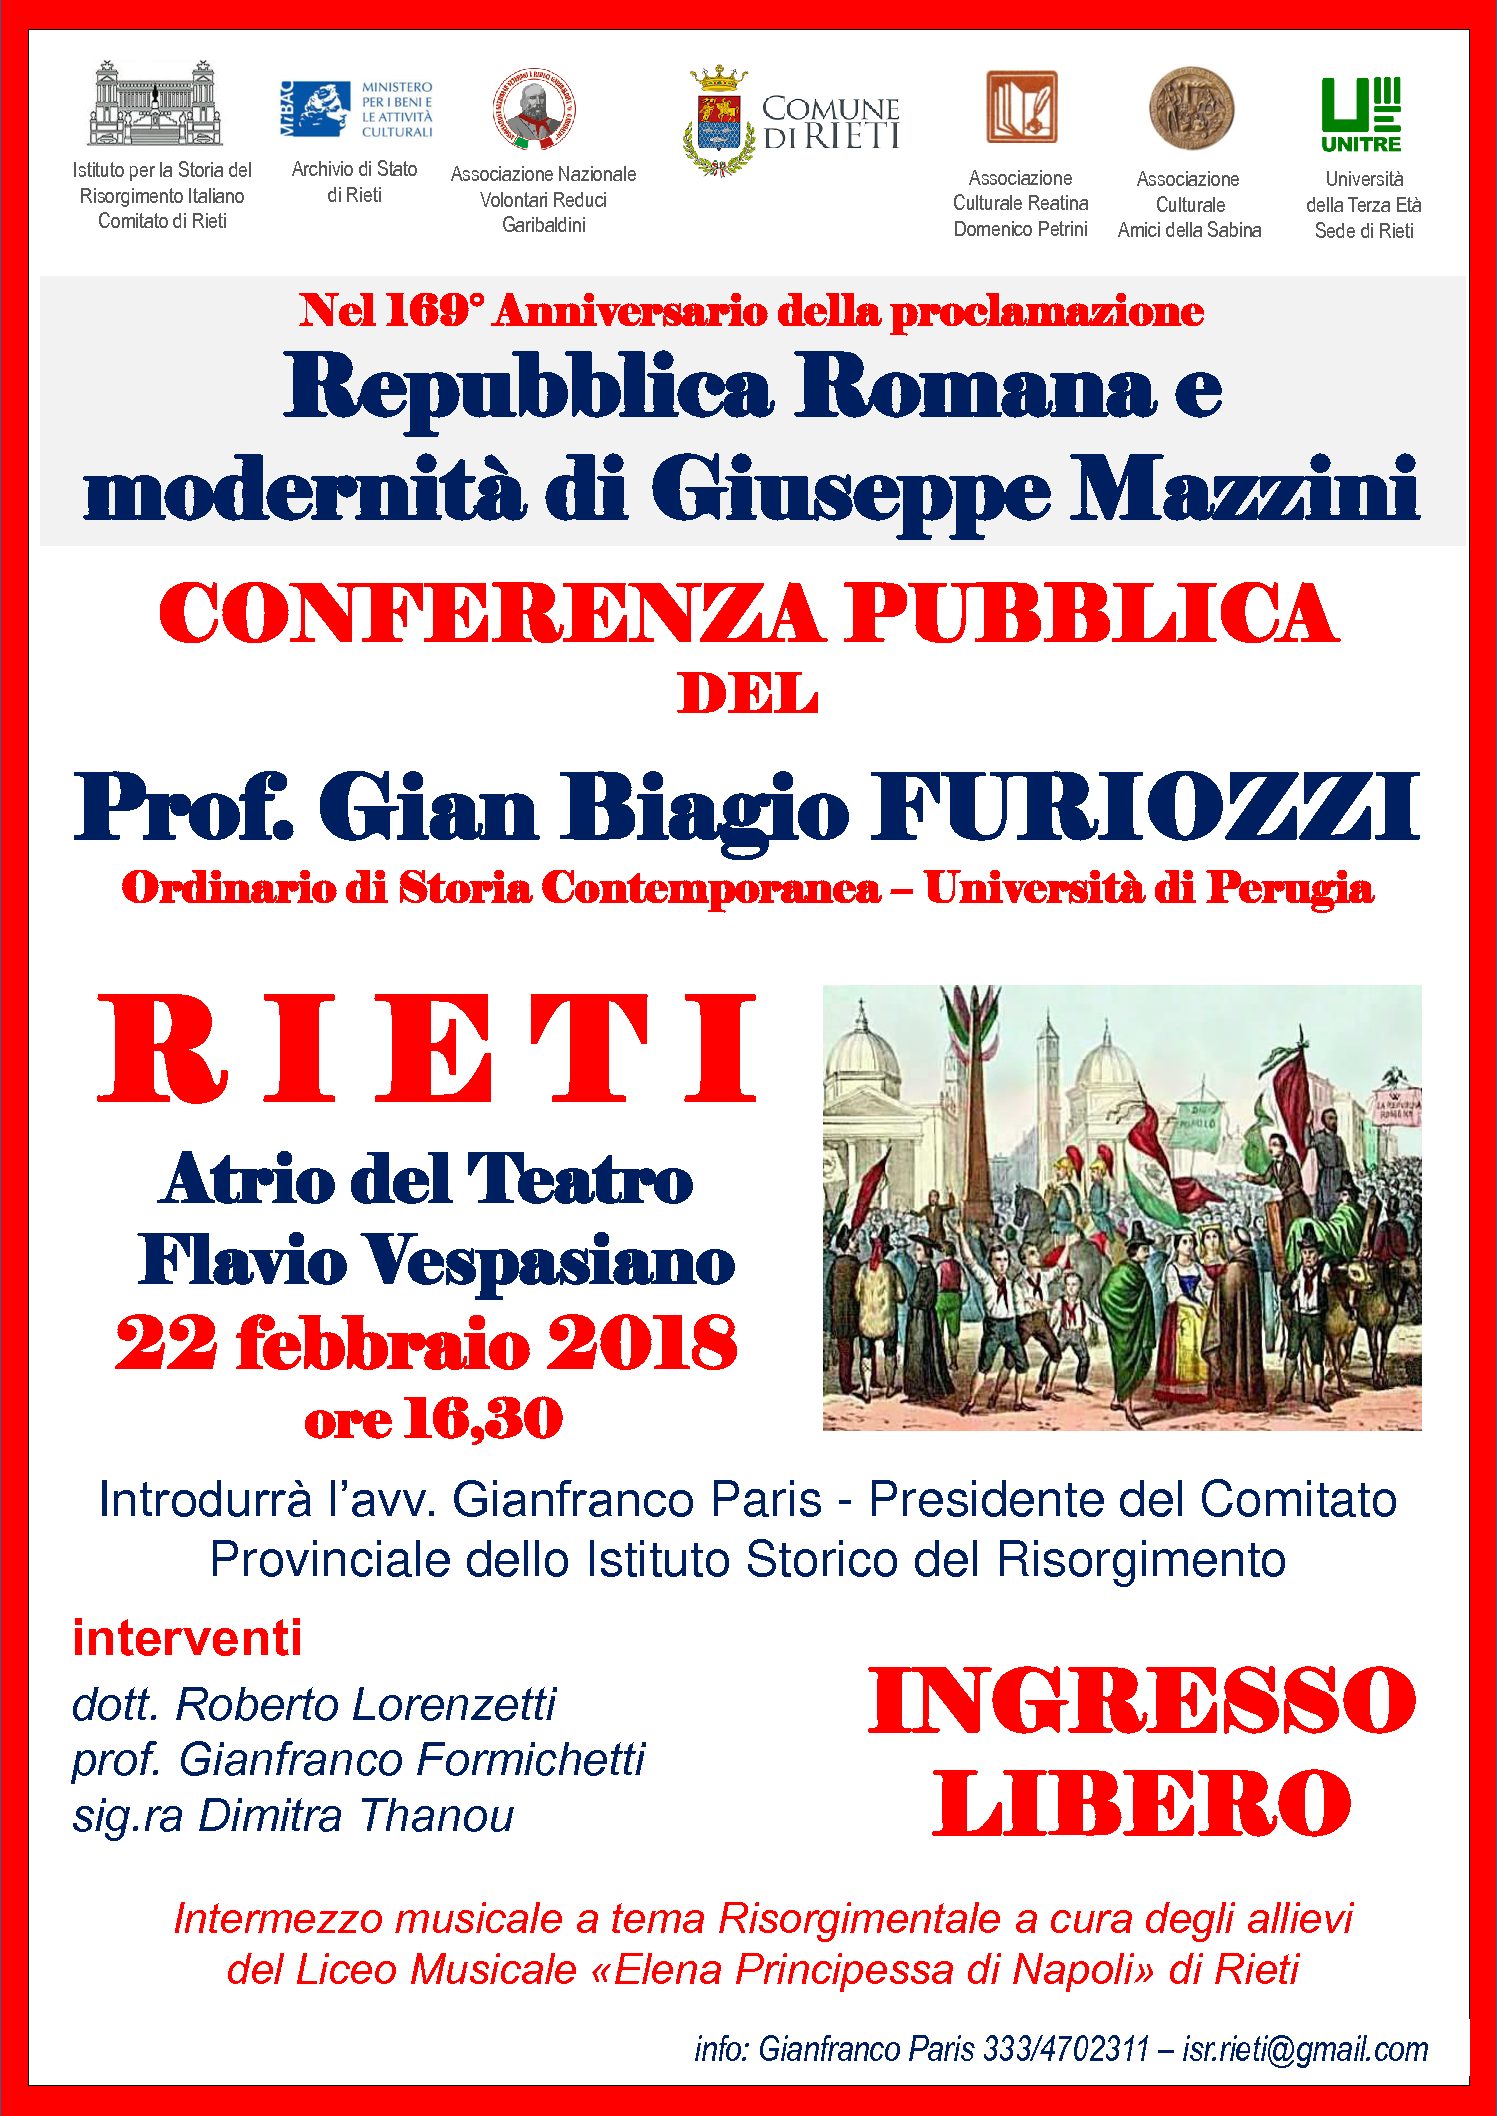 Conferenza sulla Repubblica Romana e Giuseppe Mazzini